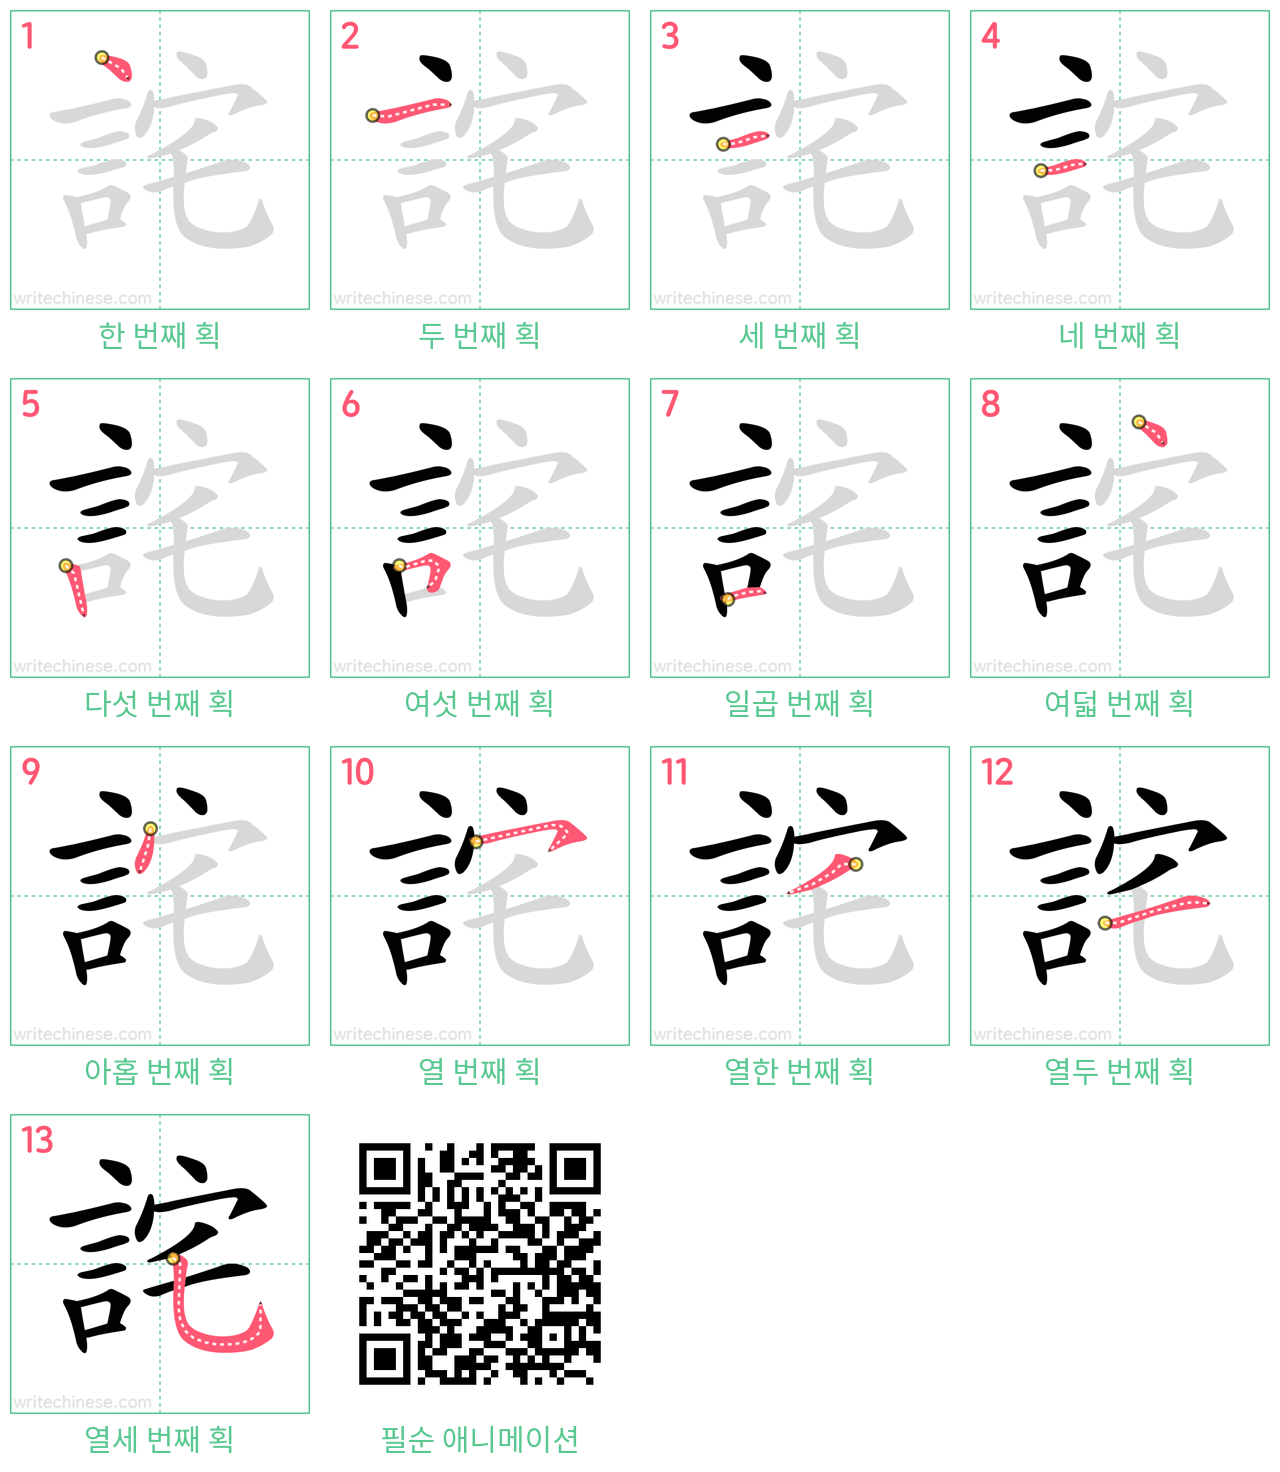 詫 step-by-step stroke order diagrams